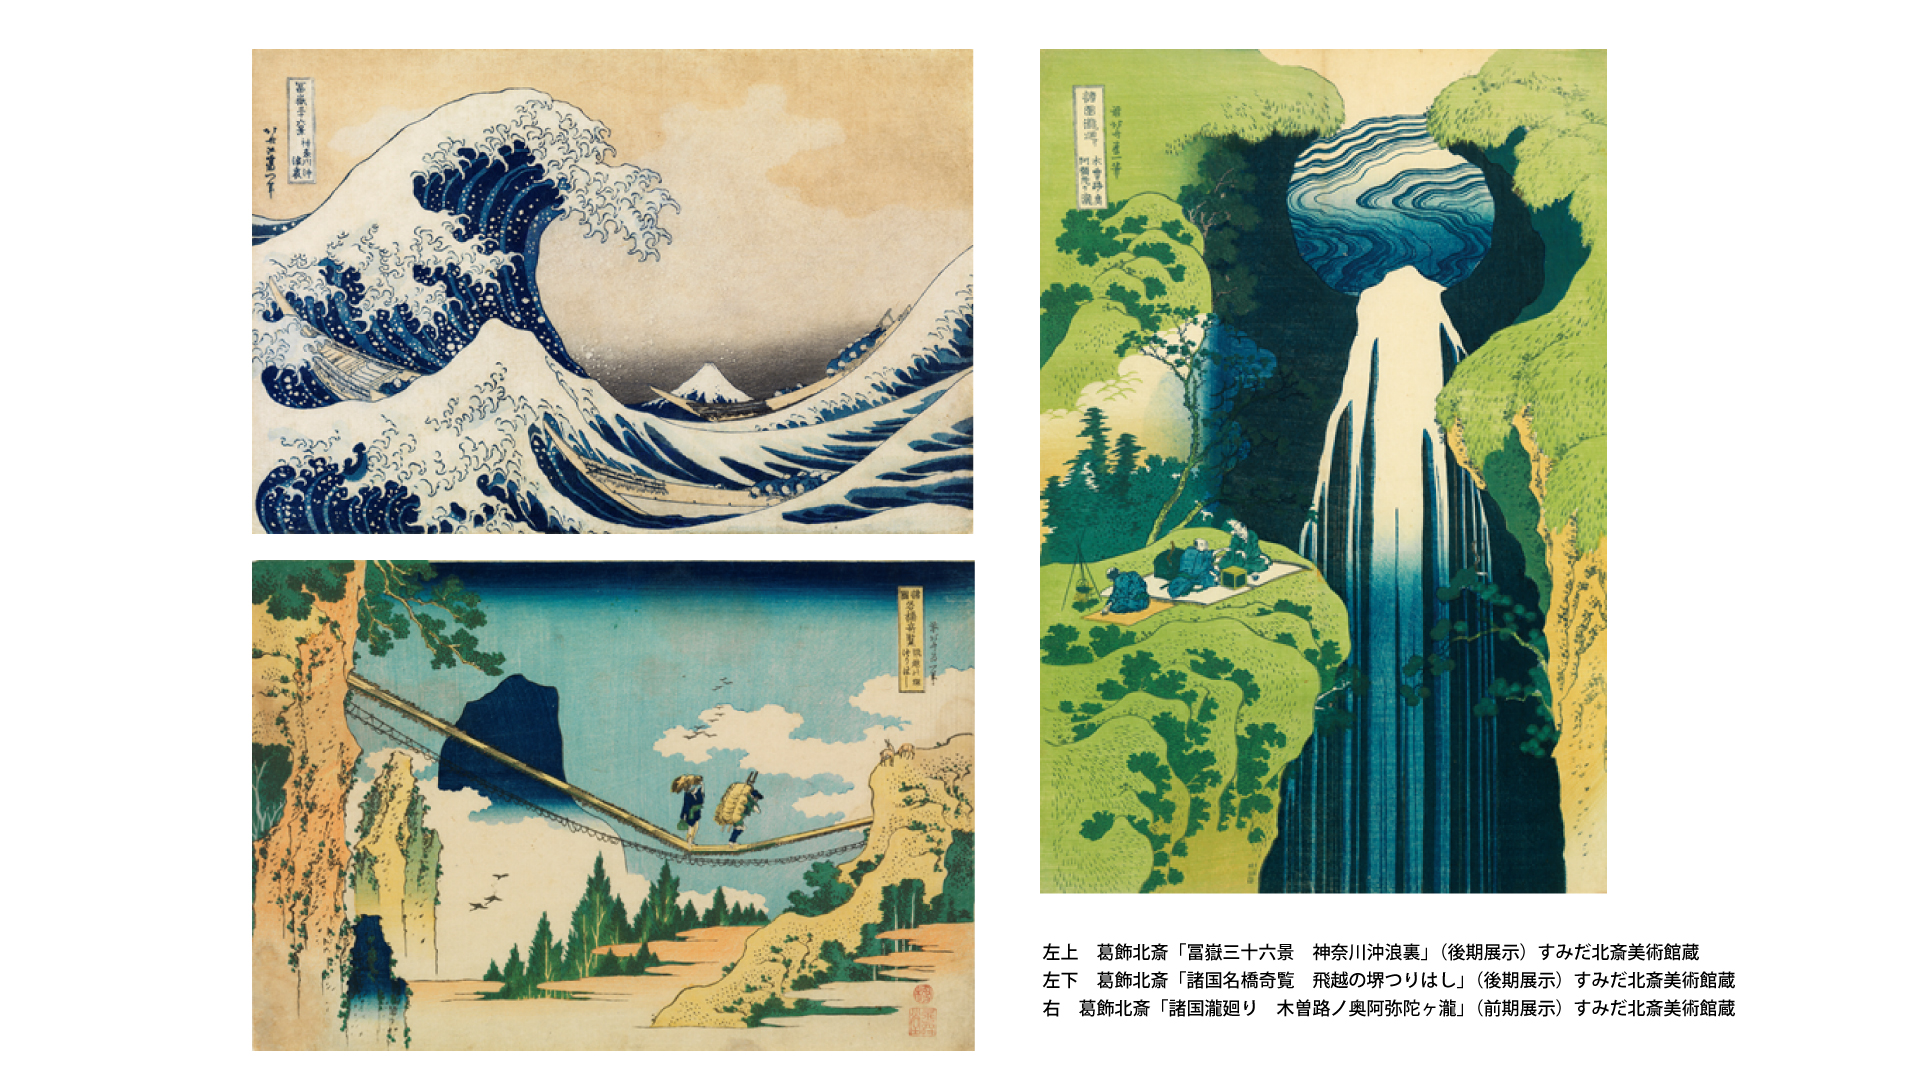 THE北斋-富岳三十六景和幻之卷轴-」展览於墨田北斋博物馆7月20日开幕